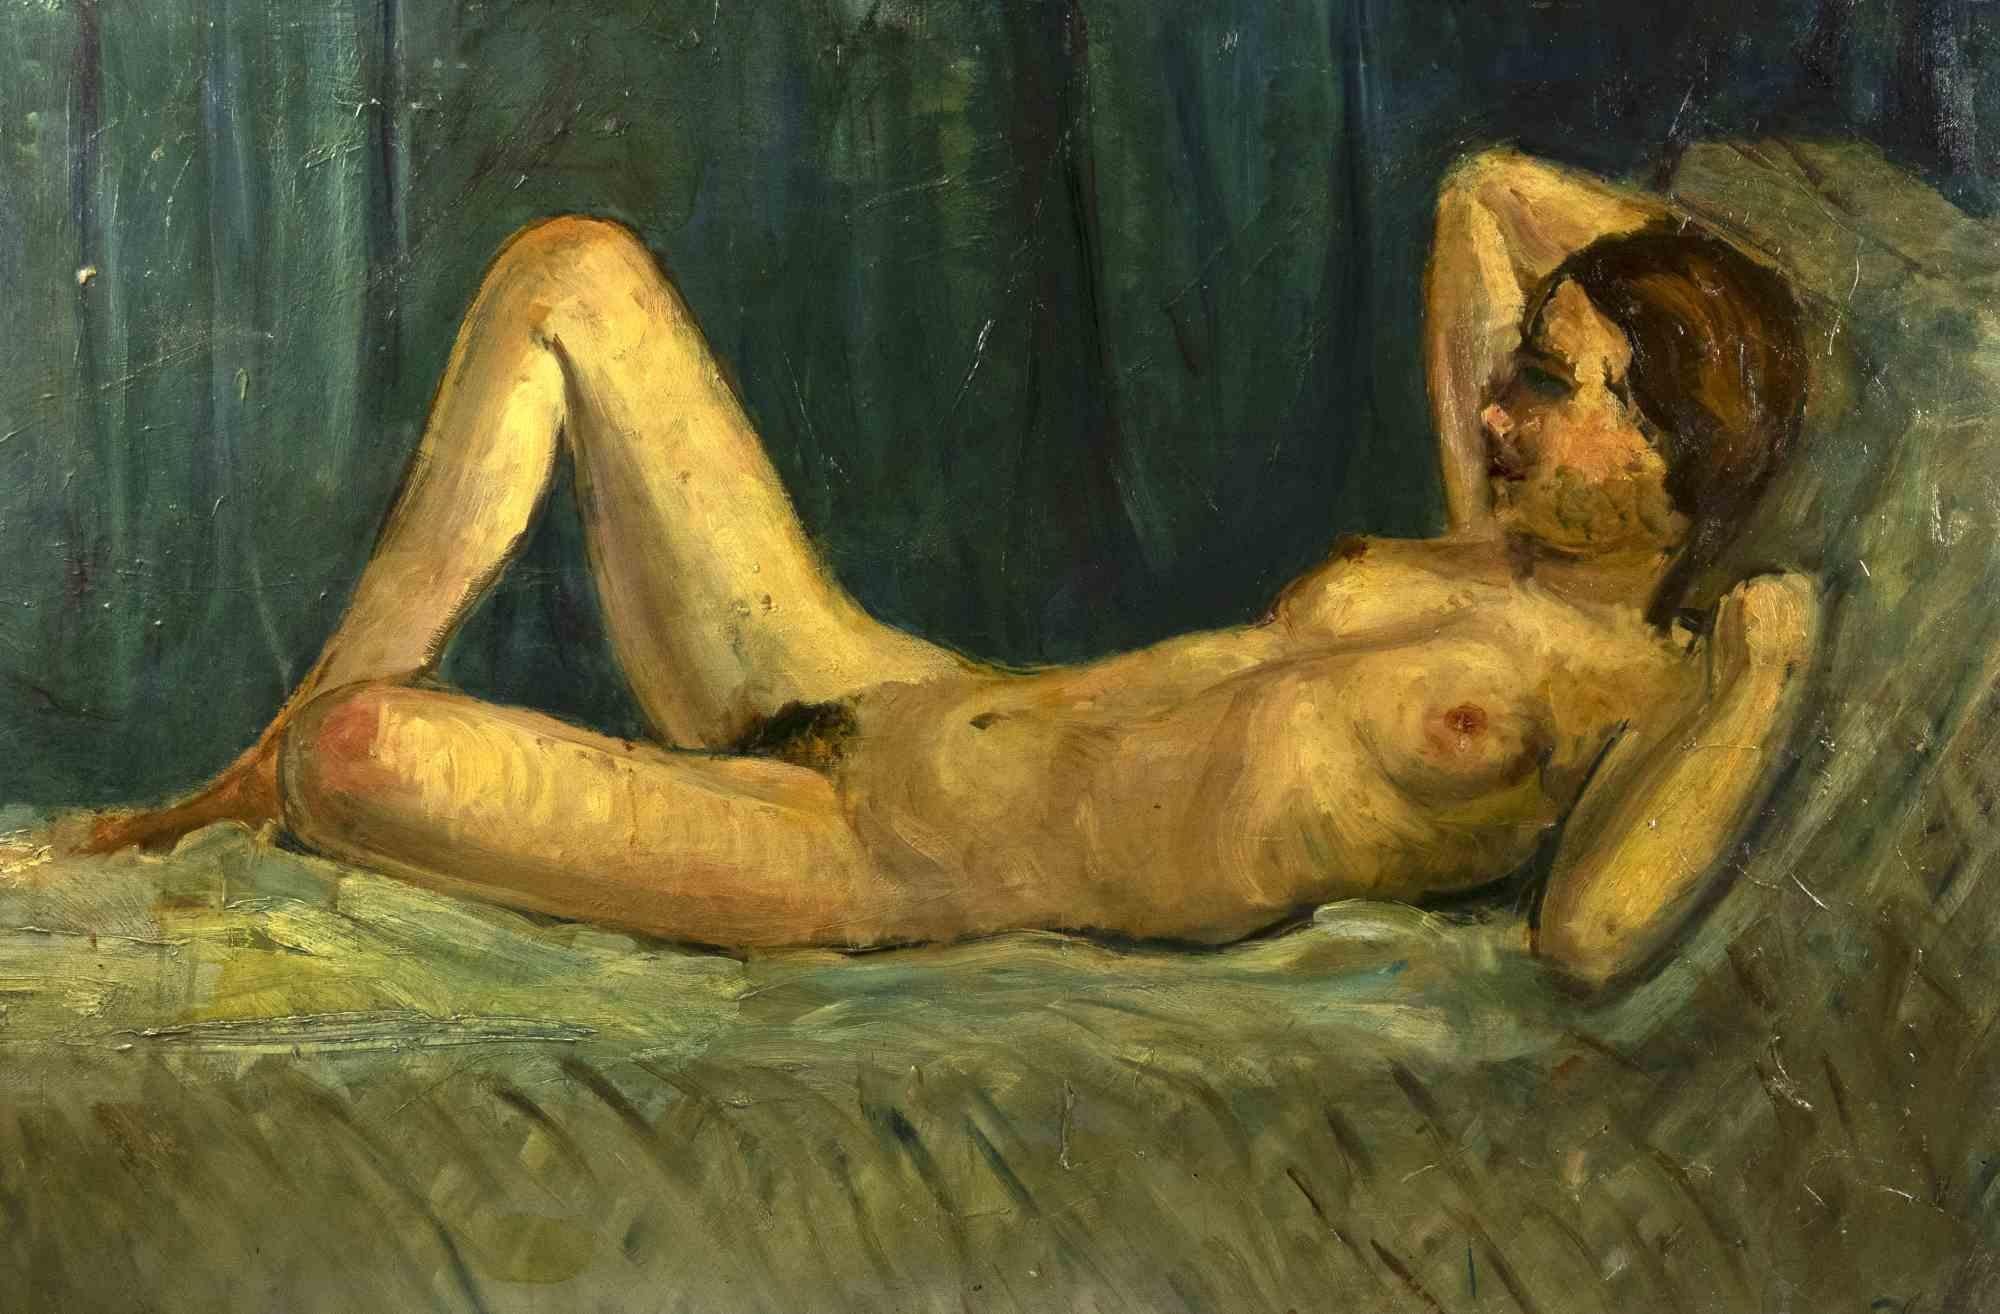 Nude est une œuvre d'art moderne originale réalisée par Antonio Feltrinelli dans les années 1930.

Peinture à l'huile de couleurs mélangées sur toile.

Non signé.

Antonio Feltrinelli


(Milan, 1887 - Gargnano, 1942)

 

Antonio Feltrinelli est né à